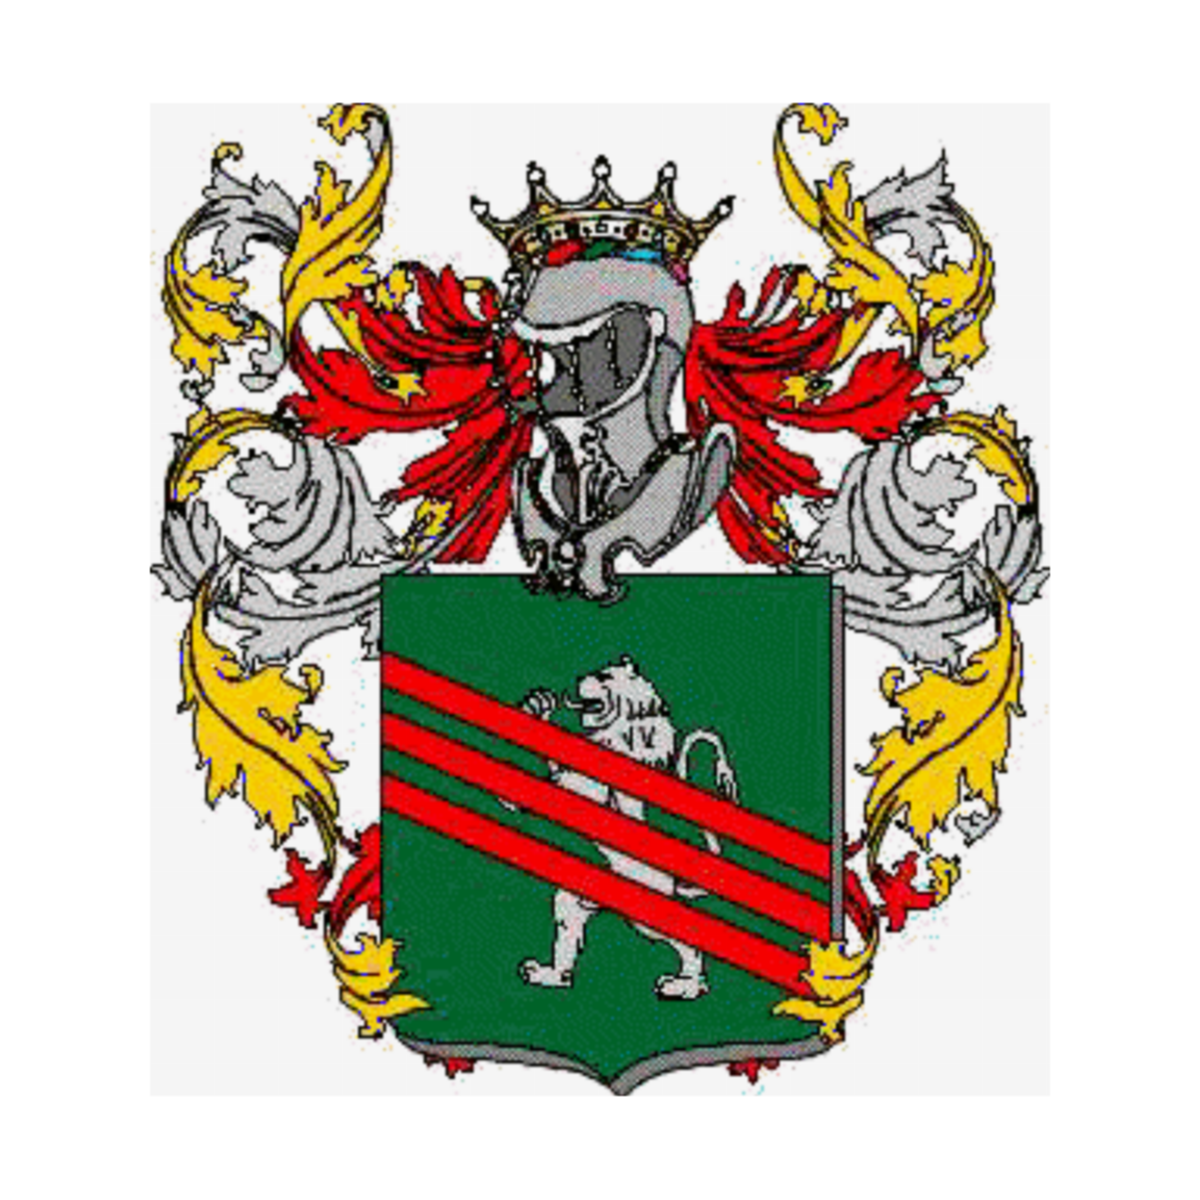 Coat of arms of family Venatoria